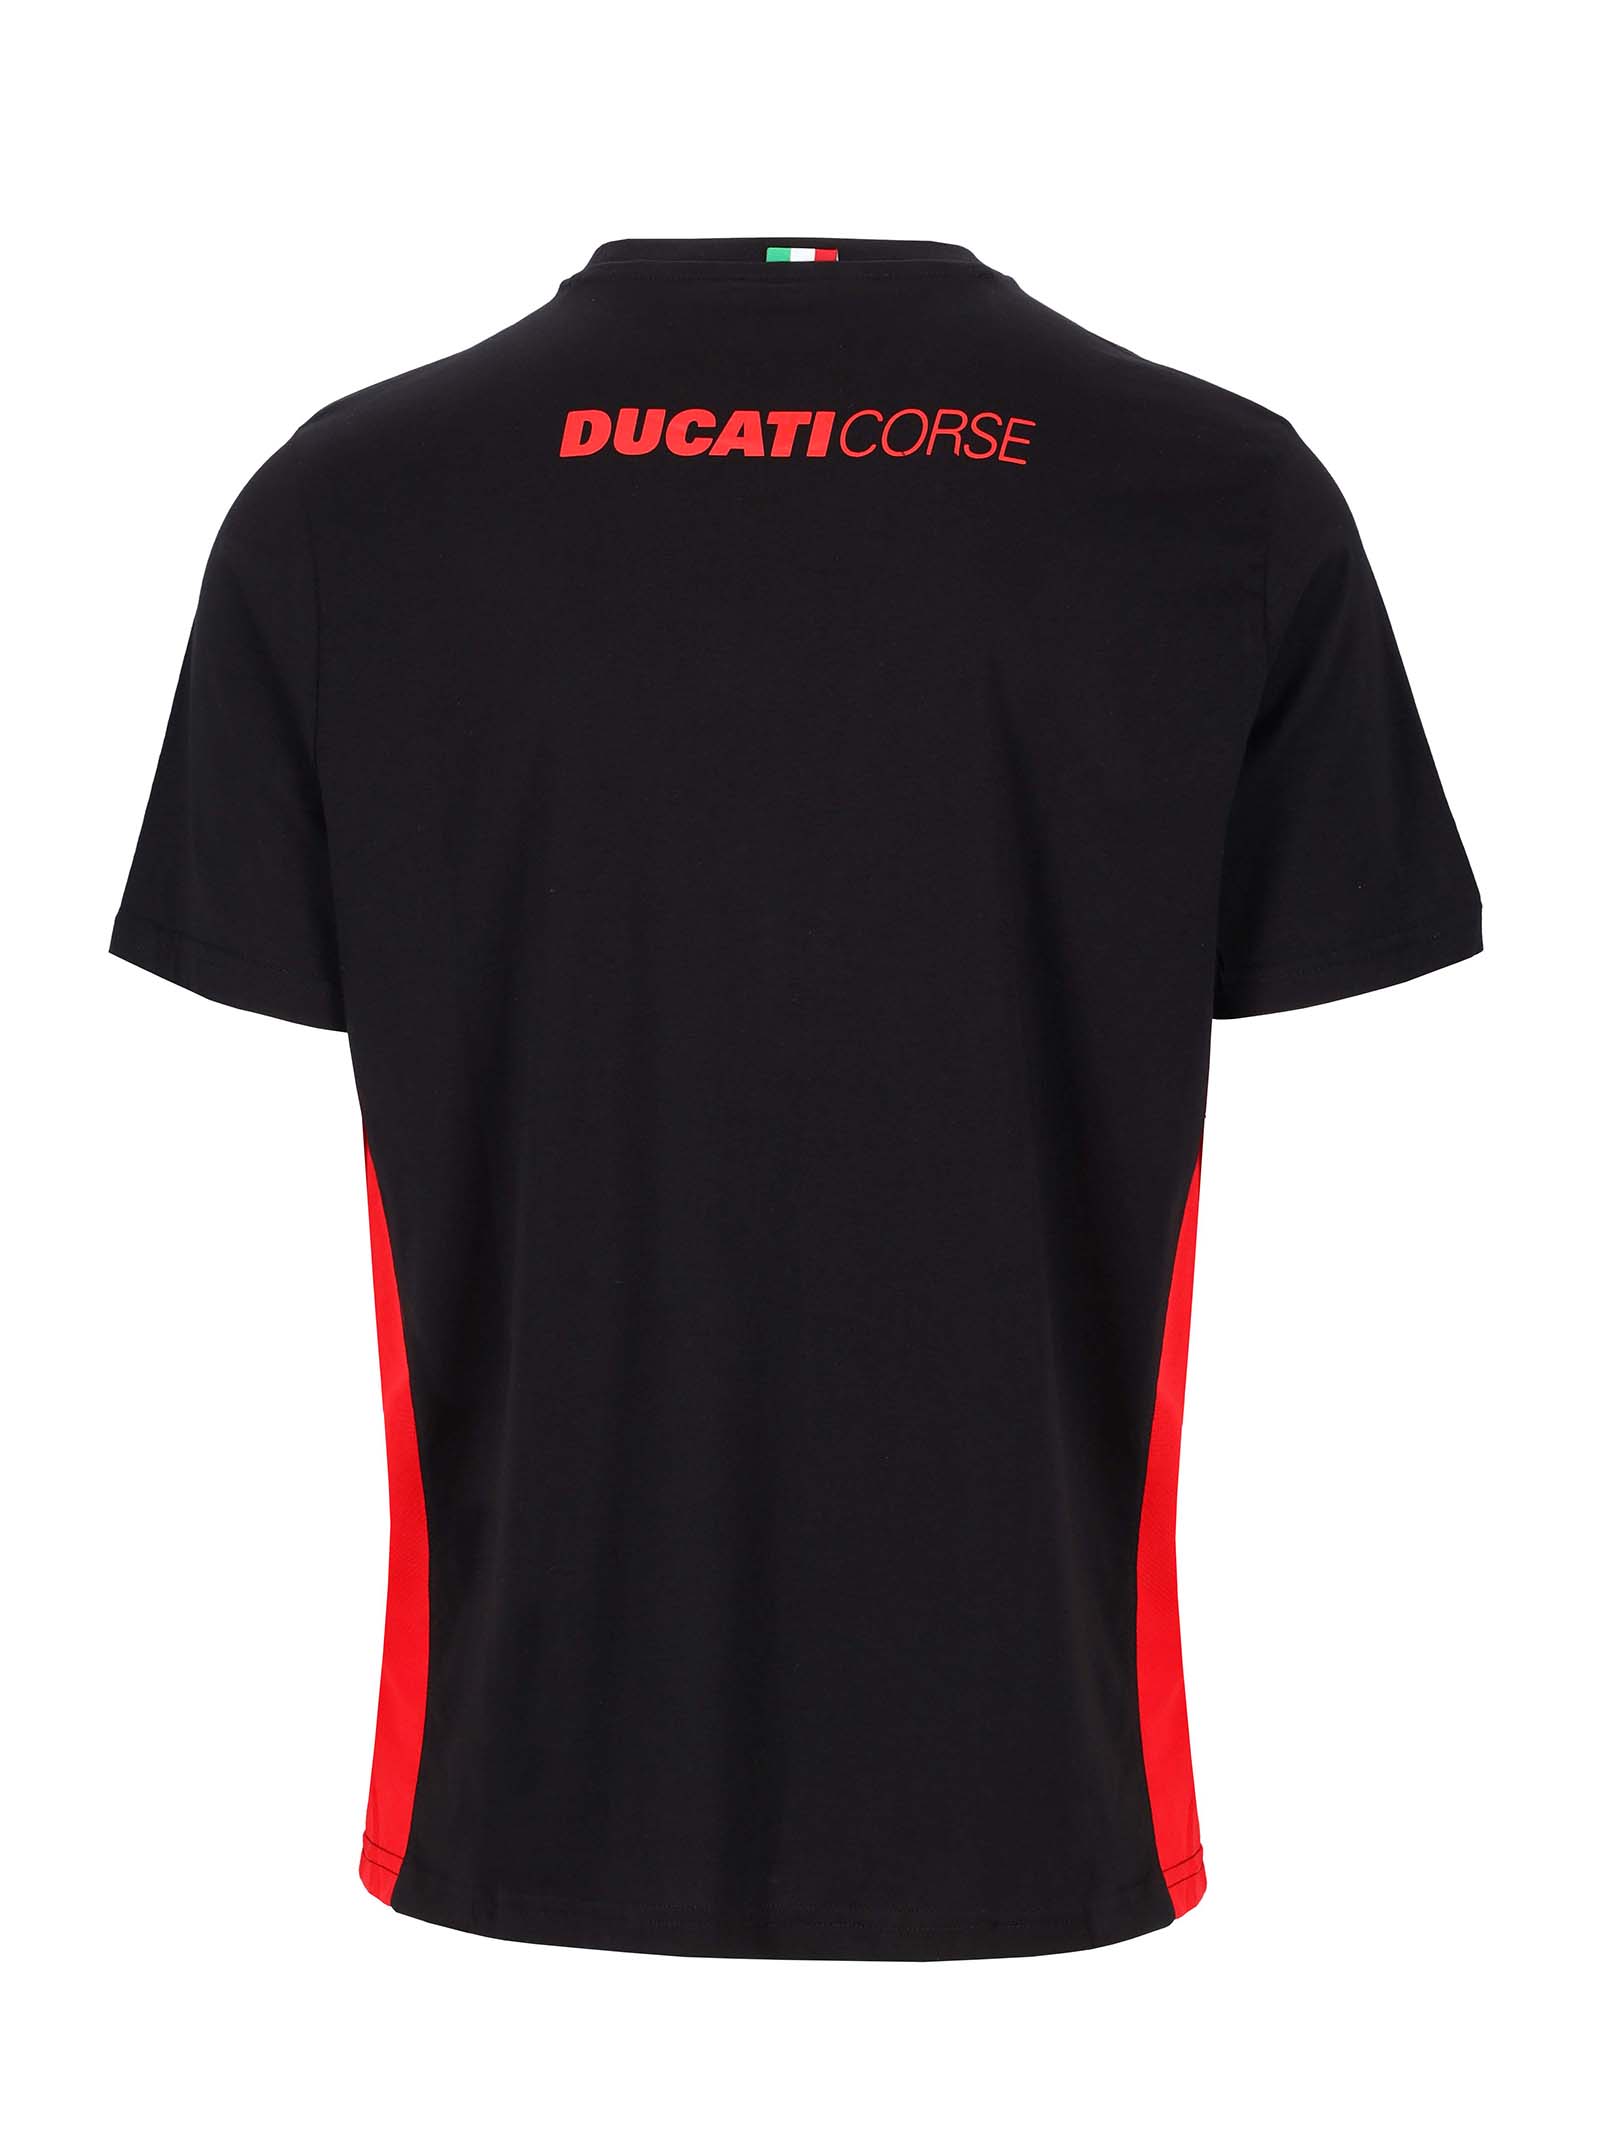 T-shirt Ducati Corse noir avec insert rouge vue dos